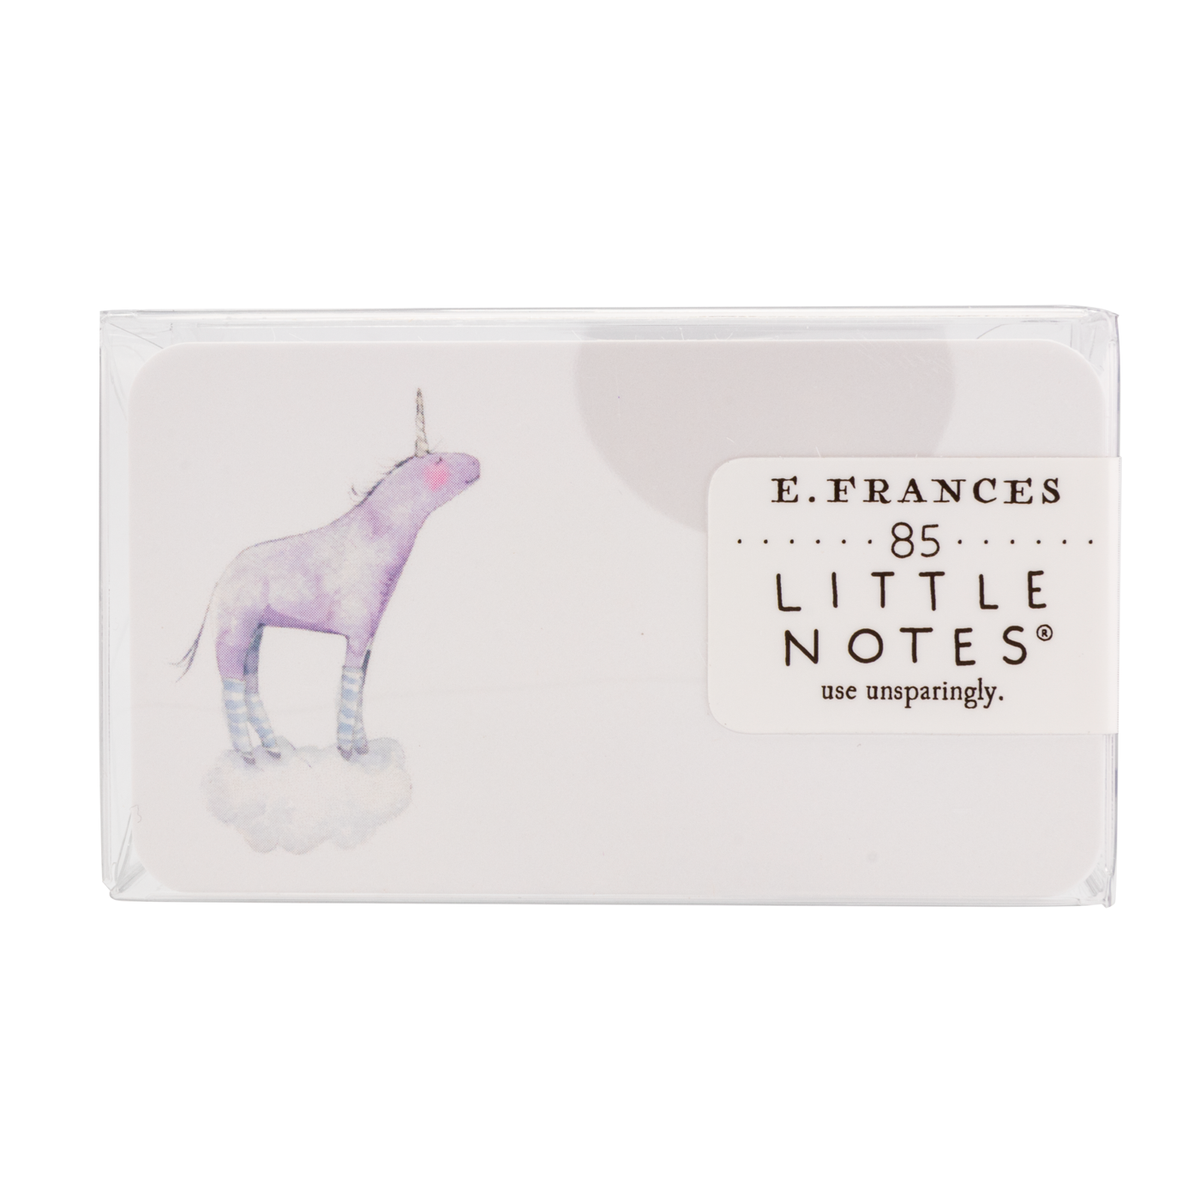 E. Frances Little Notes - Dreamy Unicorn